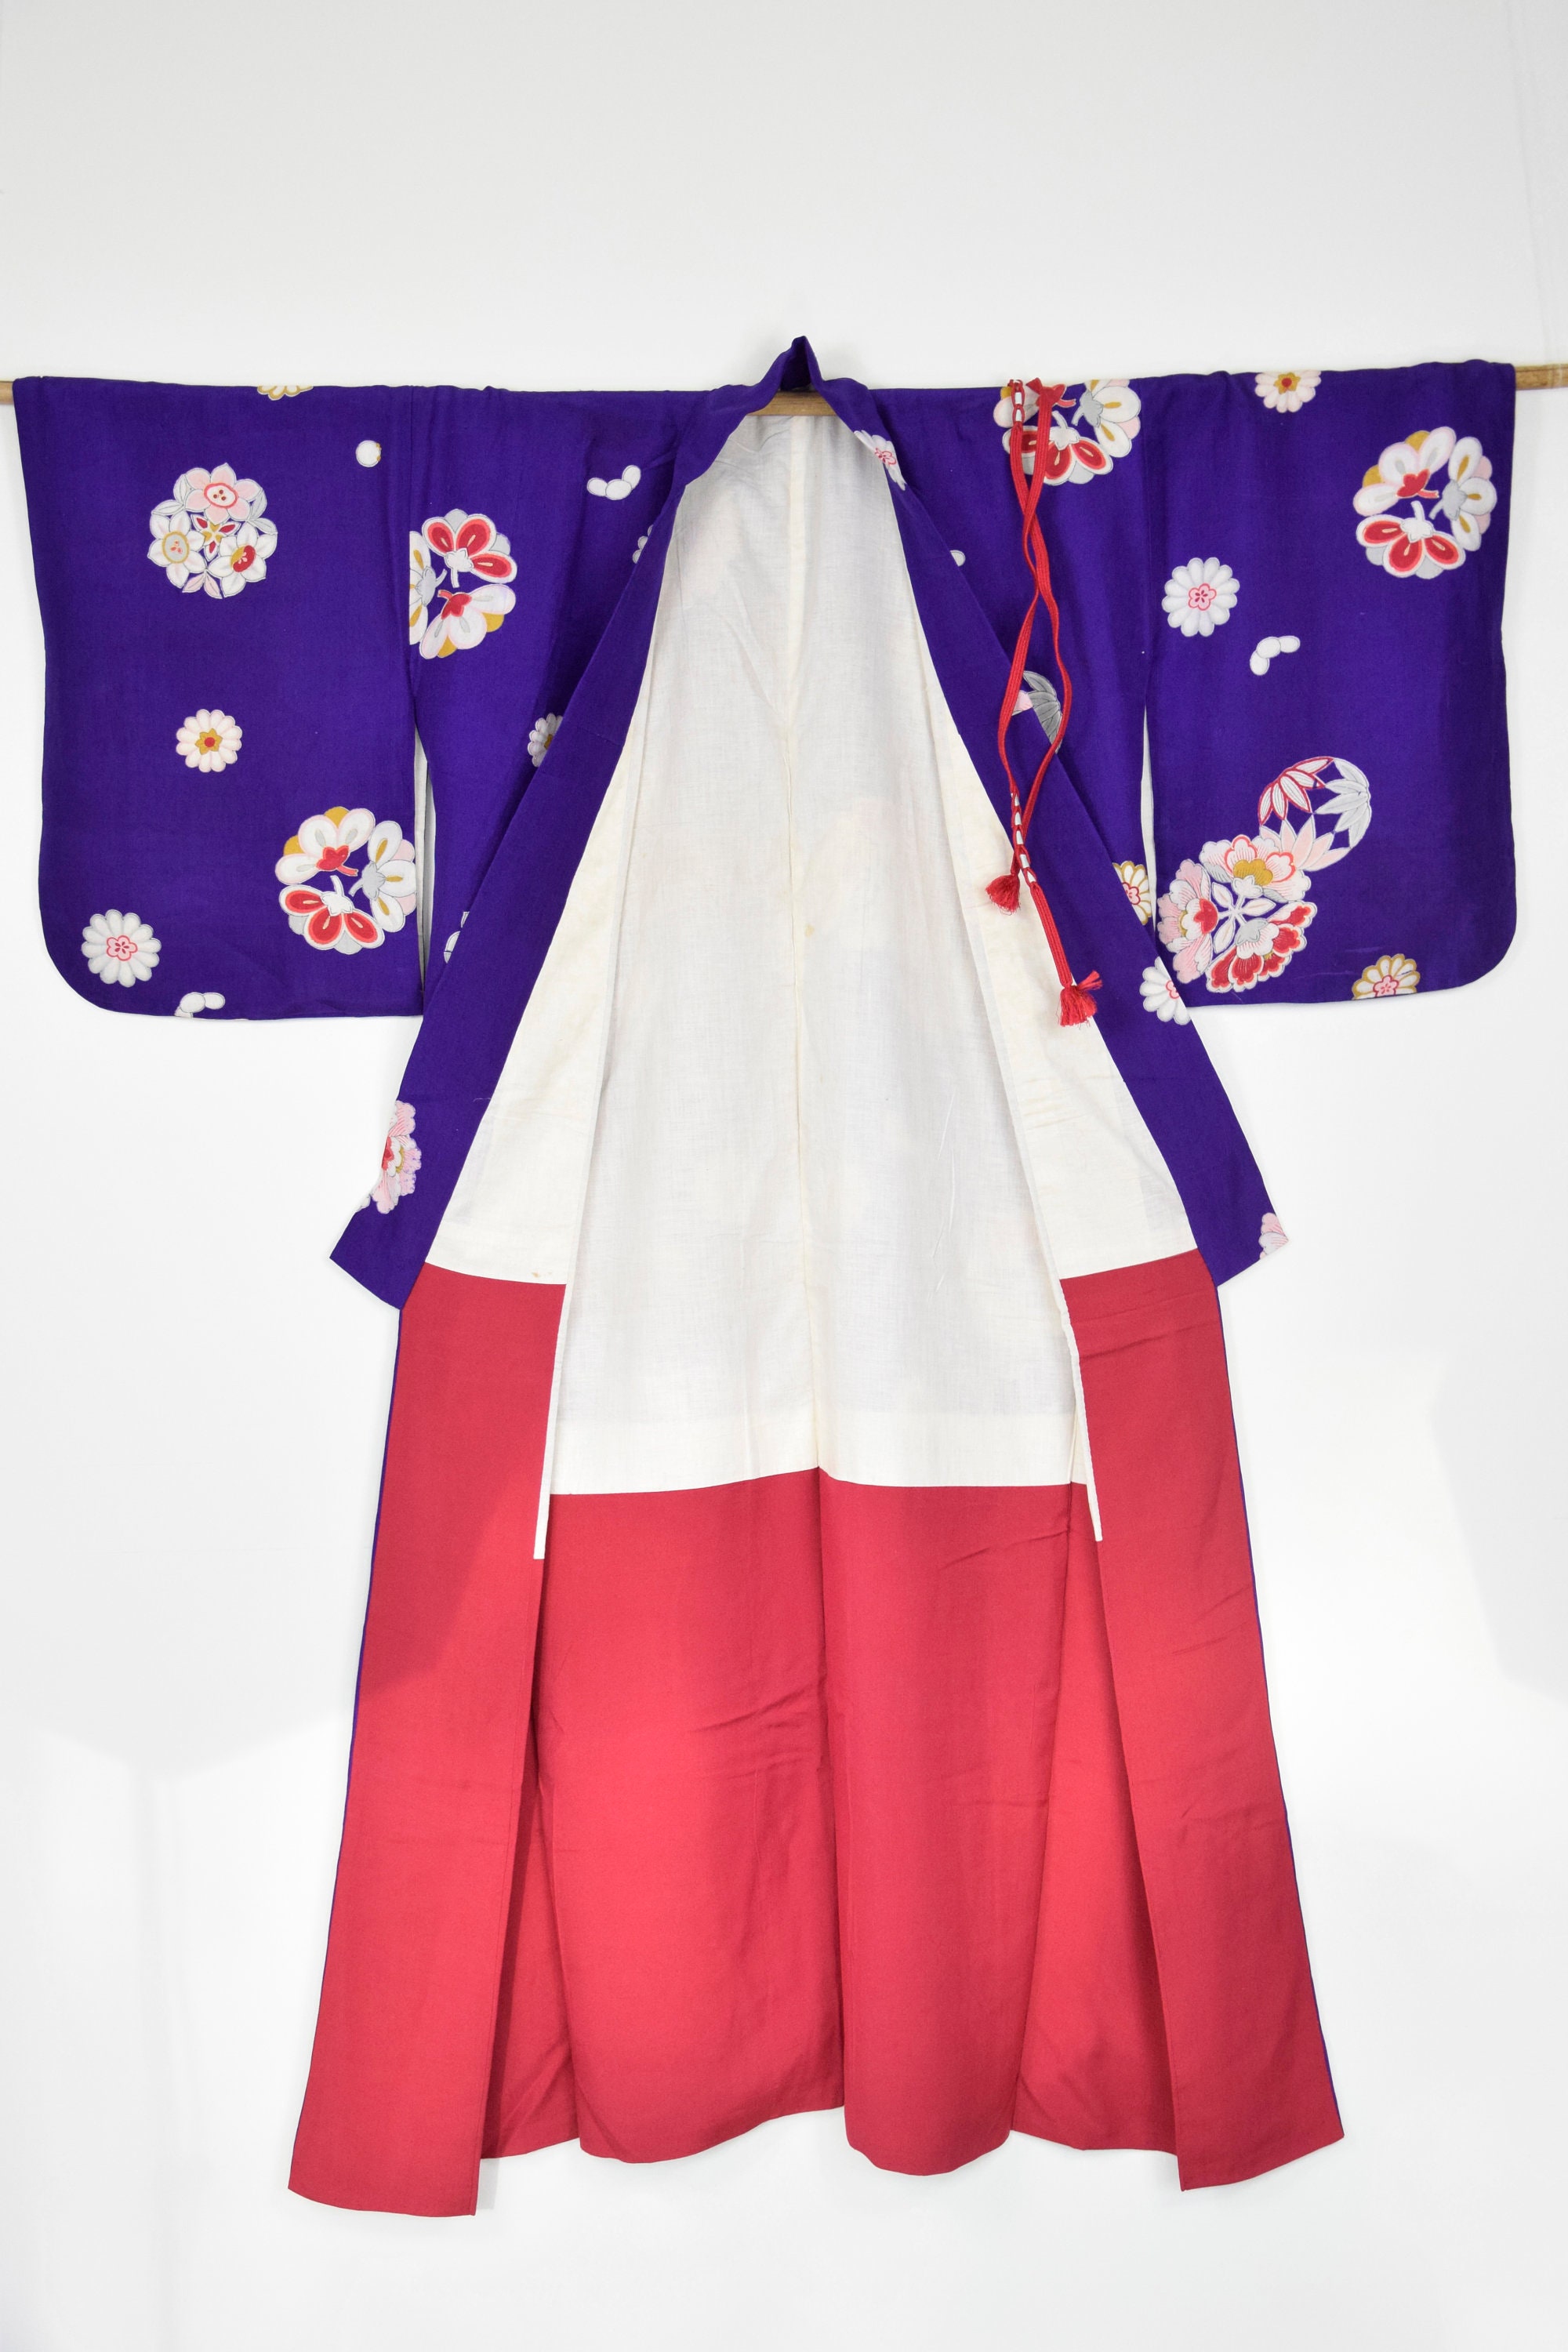 Japanese Kimono Antique Robe Silk With Obijime Belt Silk Gown Silk Kimono Robe Present